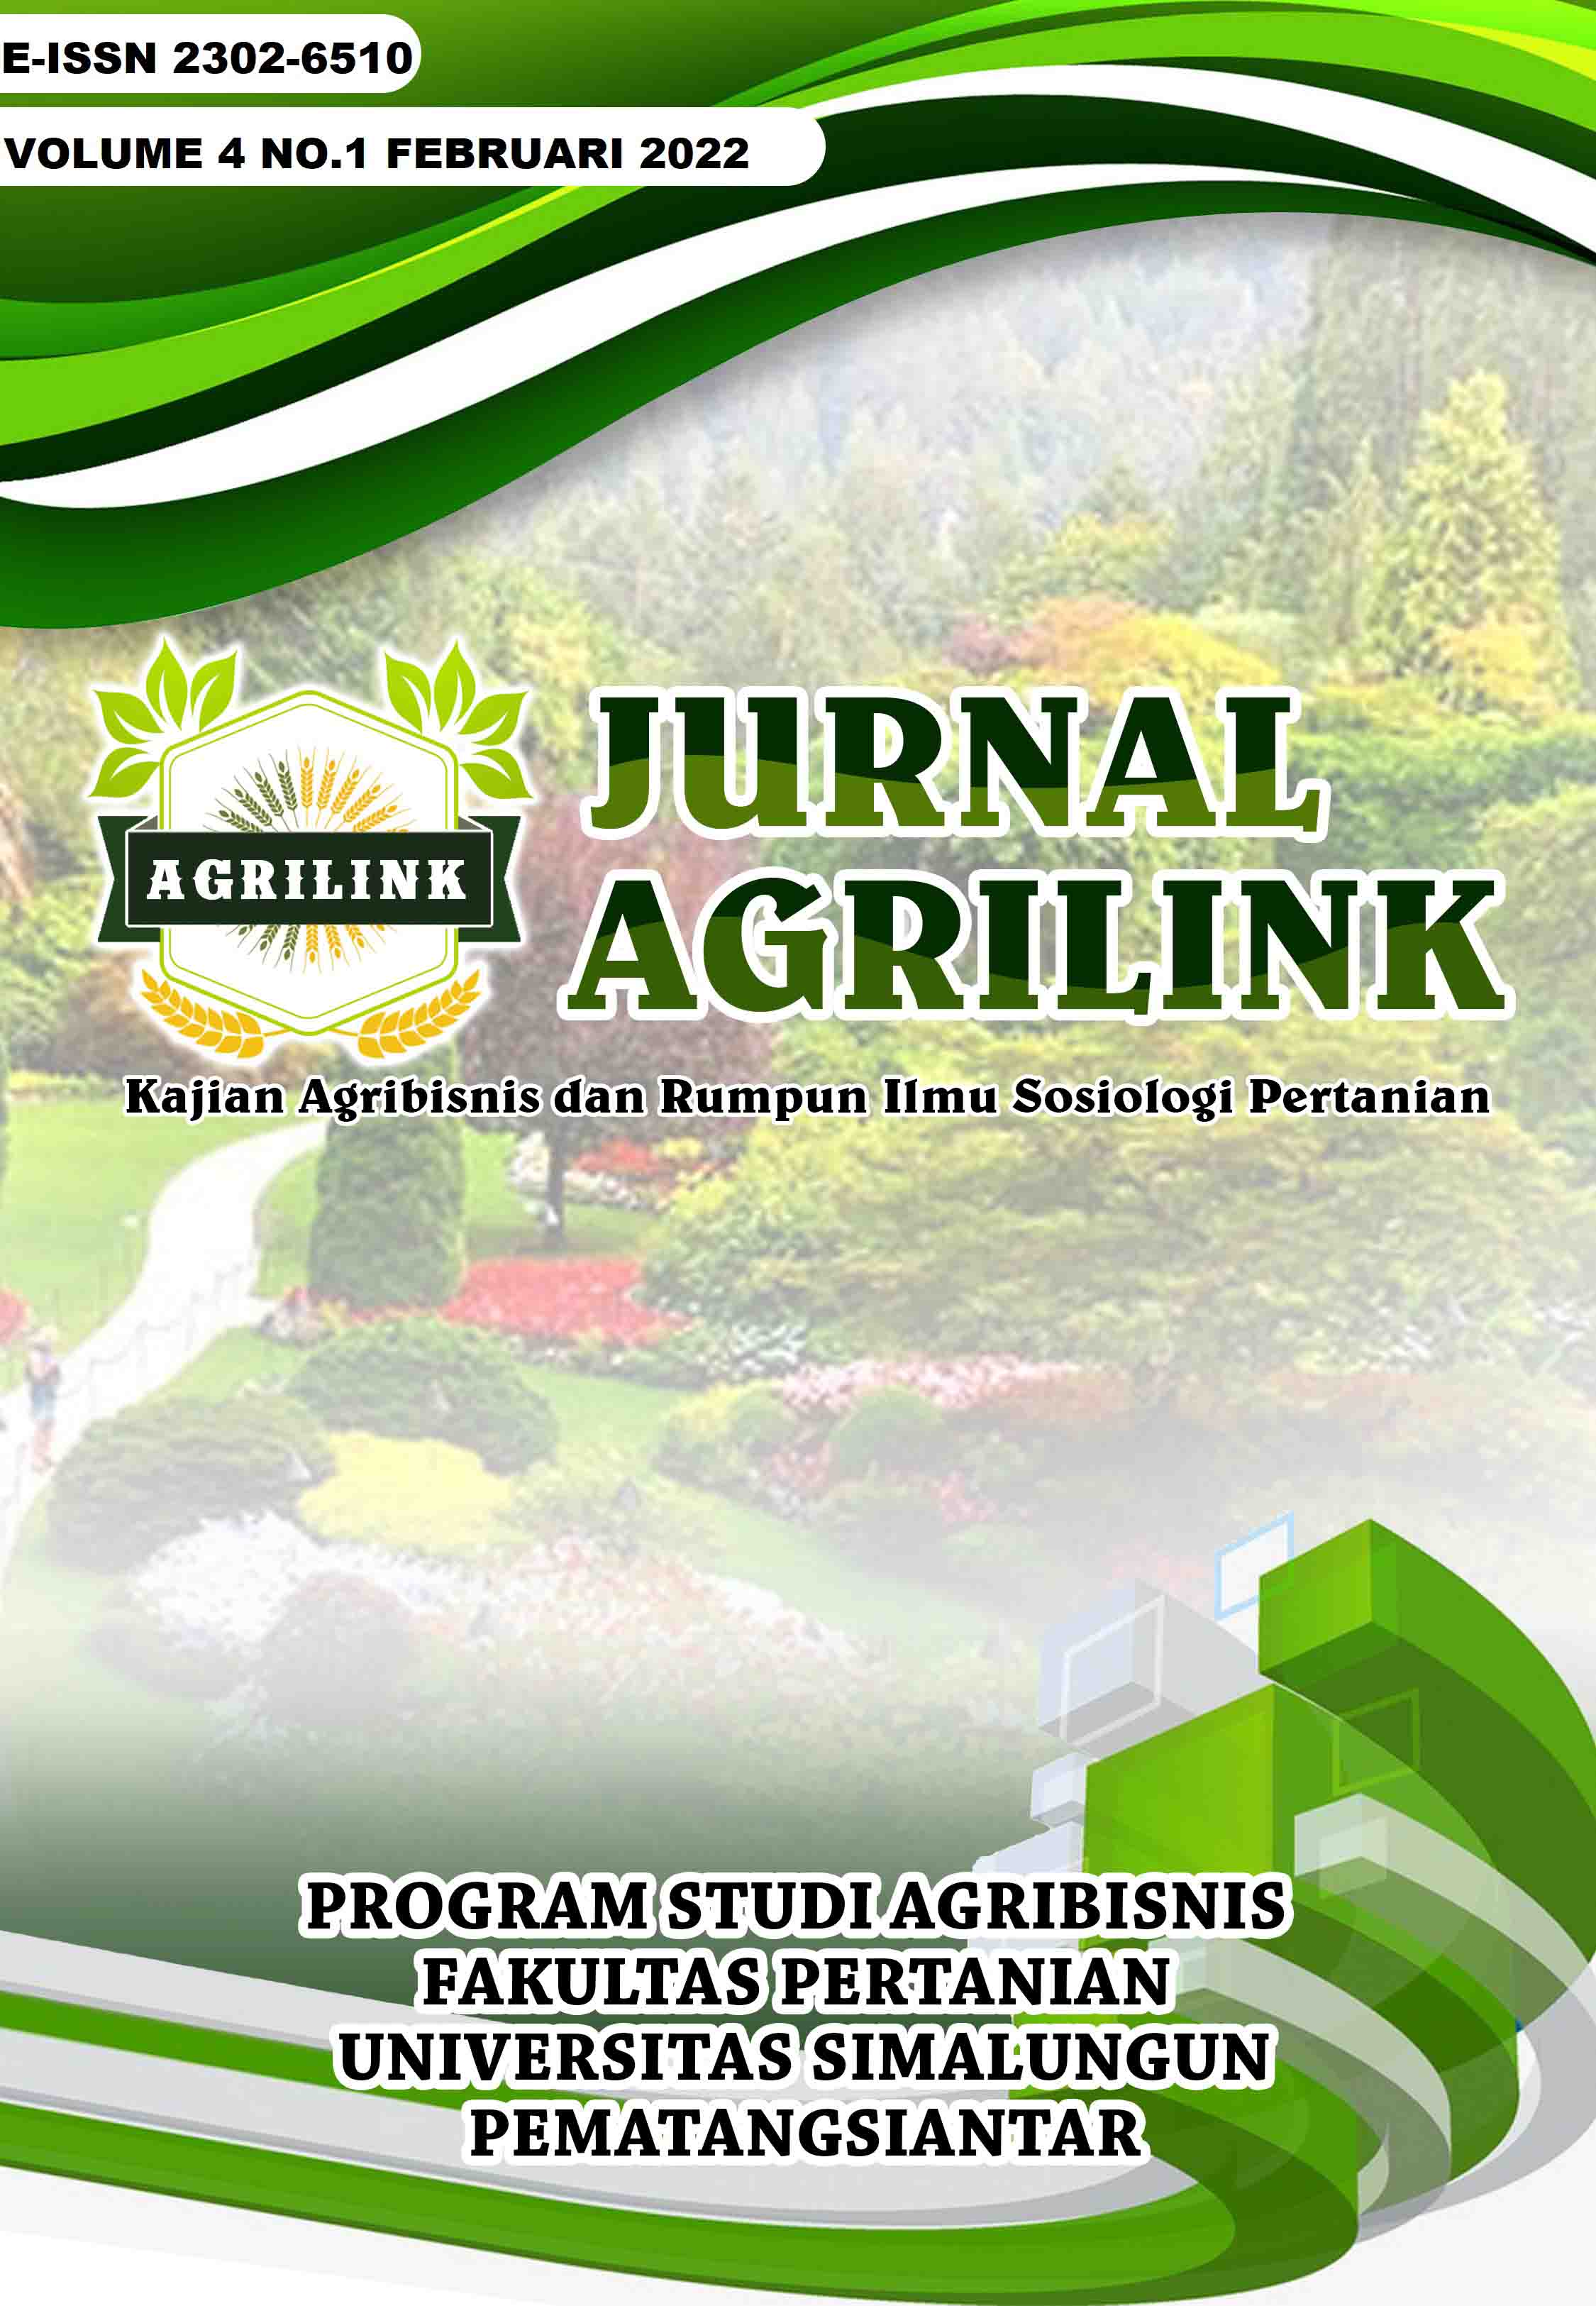 					View Vol. 4 No. 1 (2022): Jurnal Agrilink Vol 4 No 1 Februari 2022
				